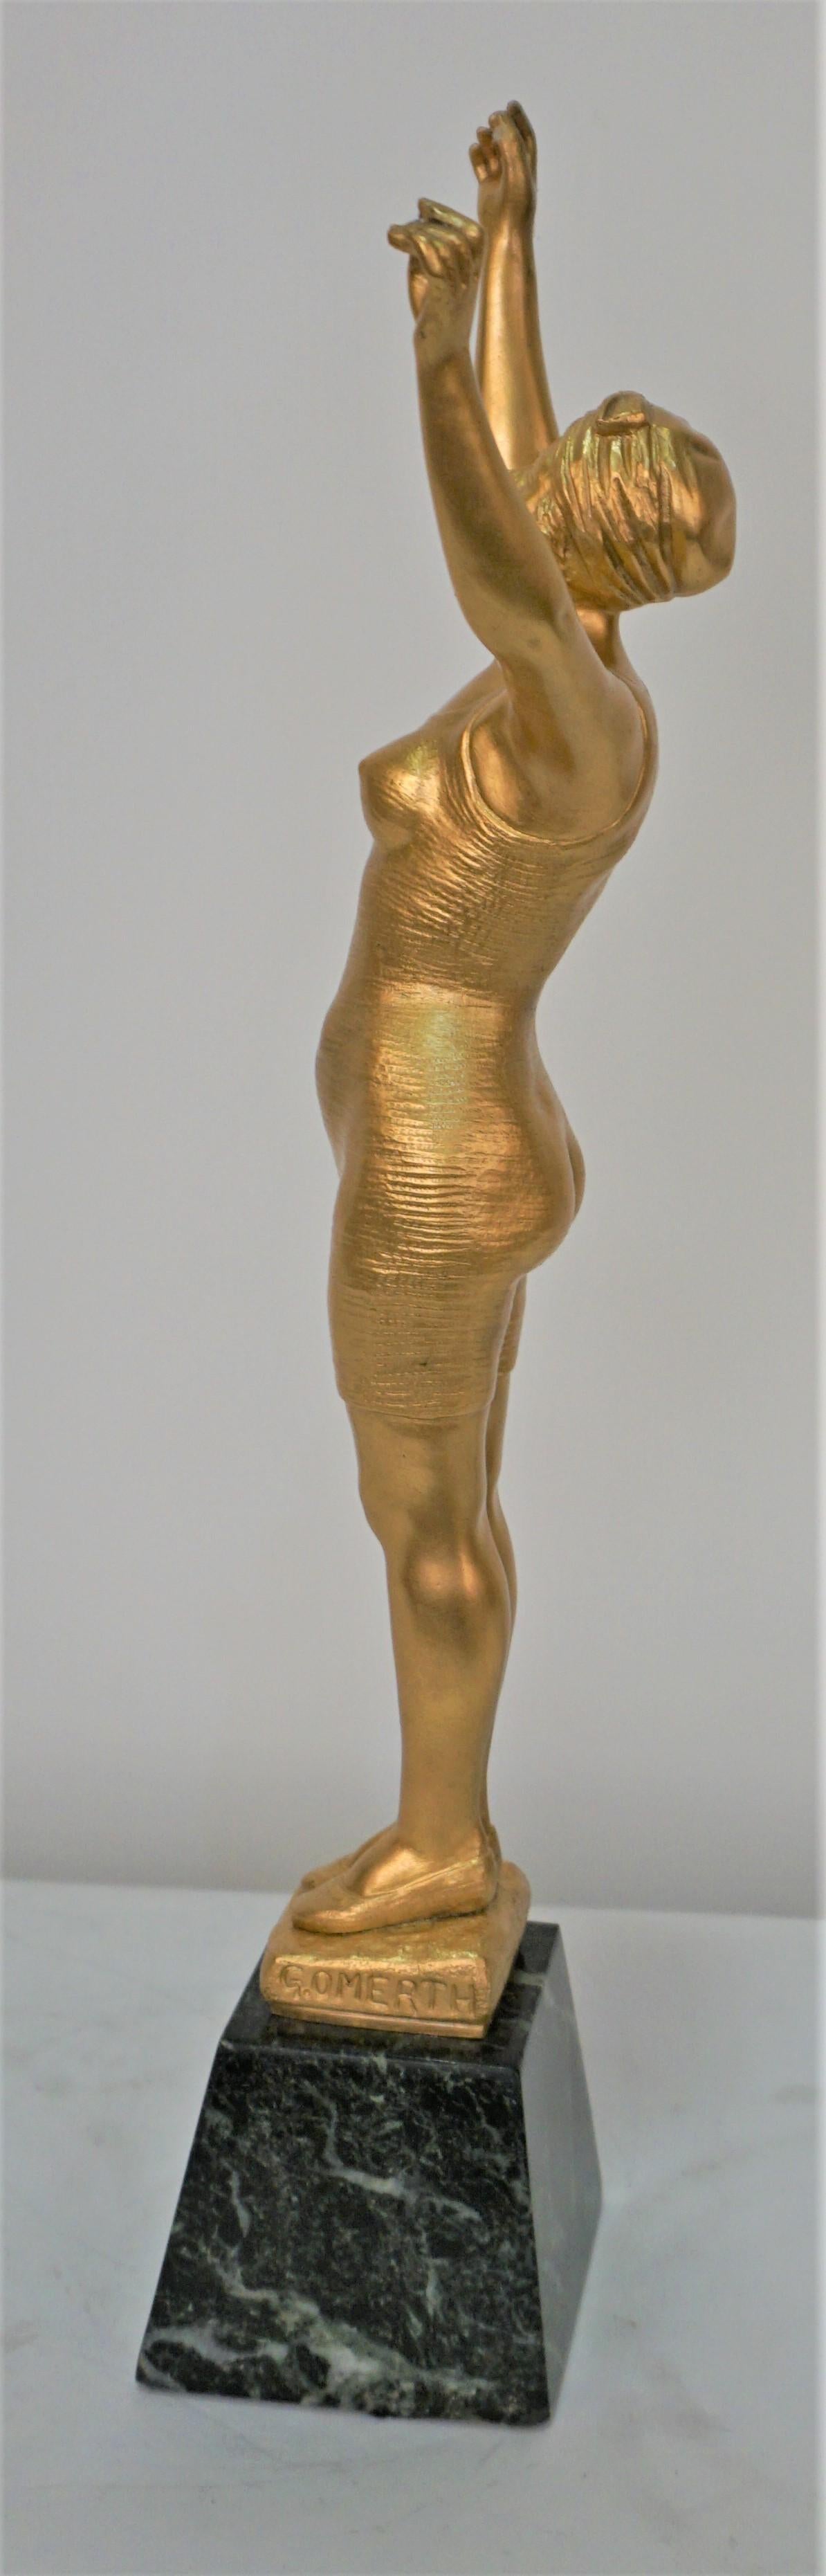 Dore-Bronze einer weiblichen Figur in Badekleidung auf einem Marmor von George Omerth.